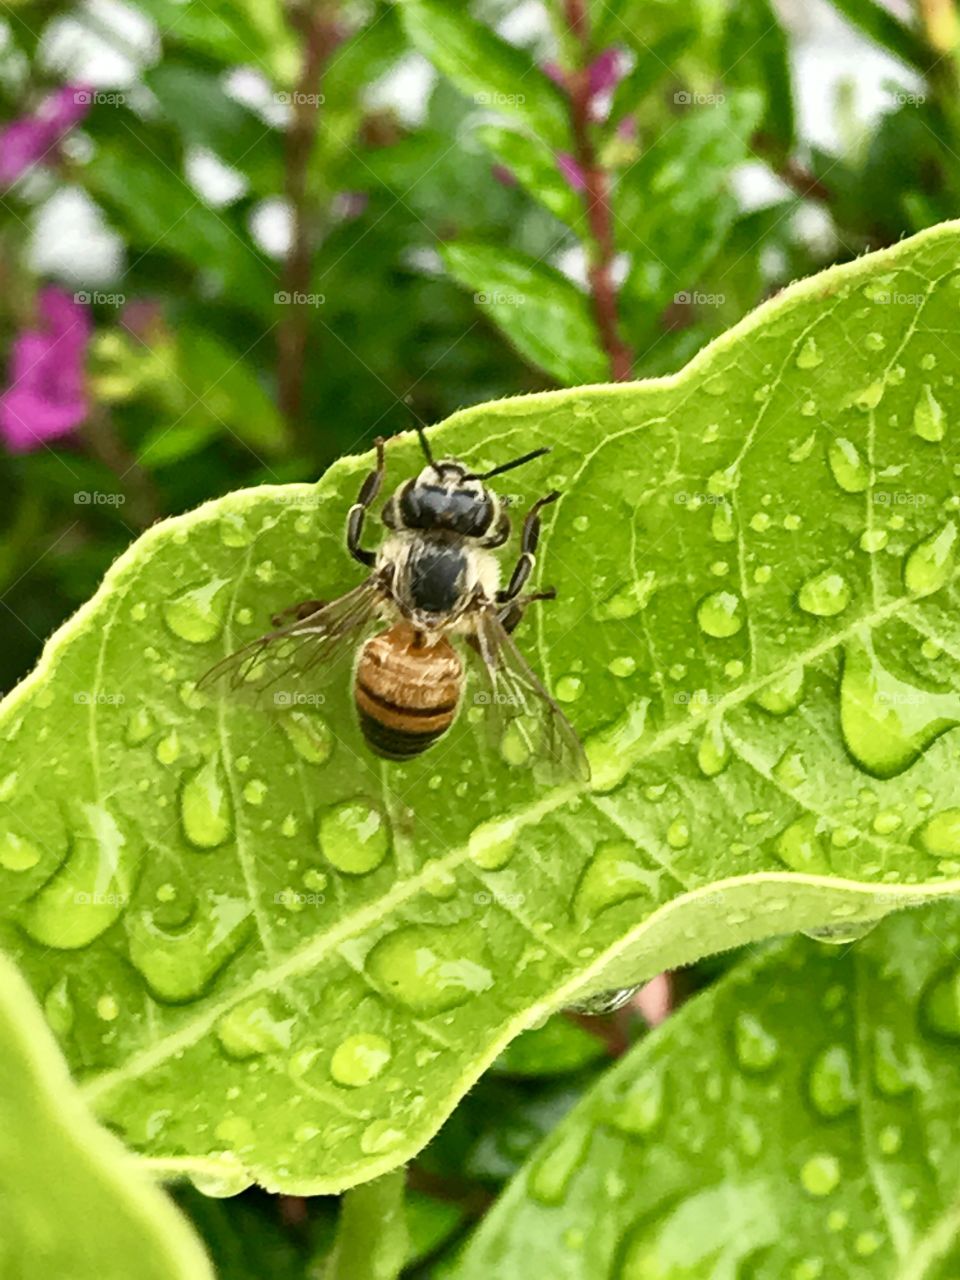 I'll Bee!